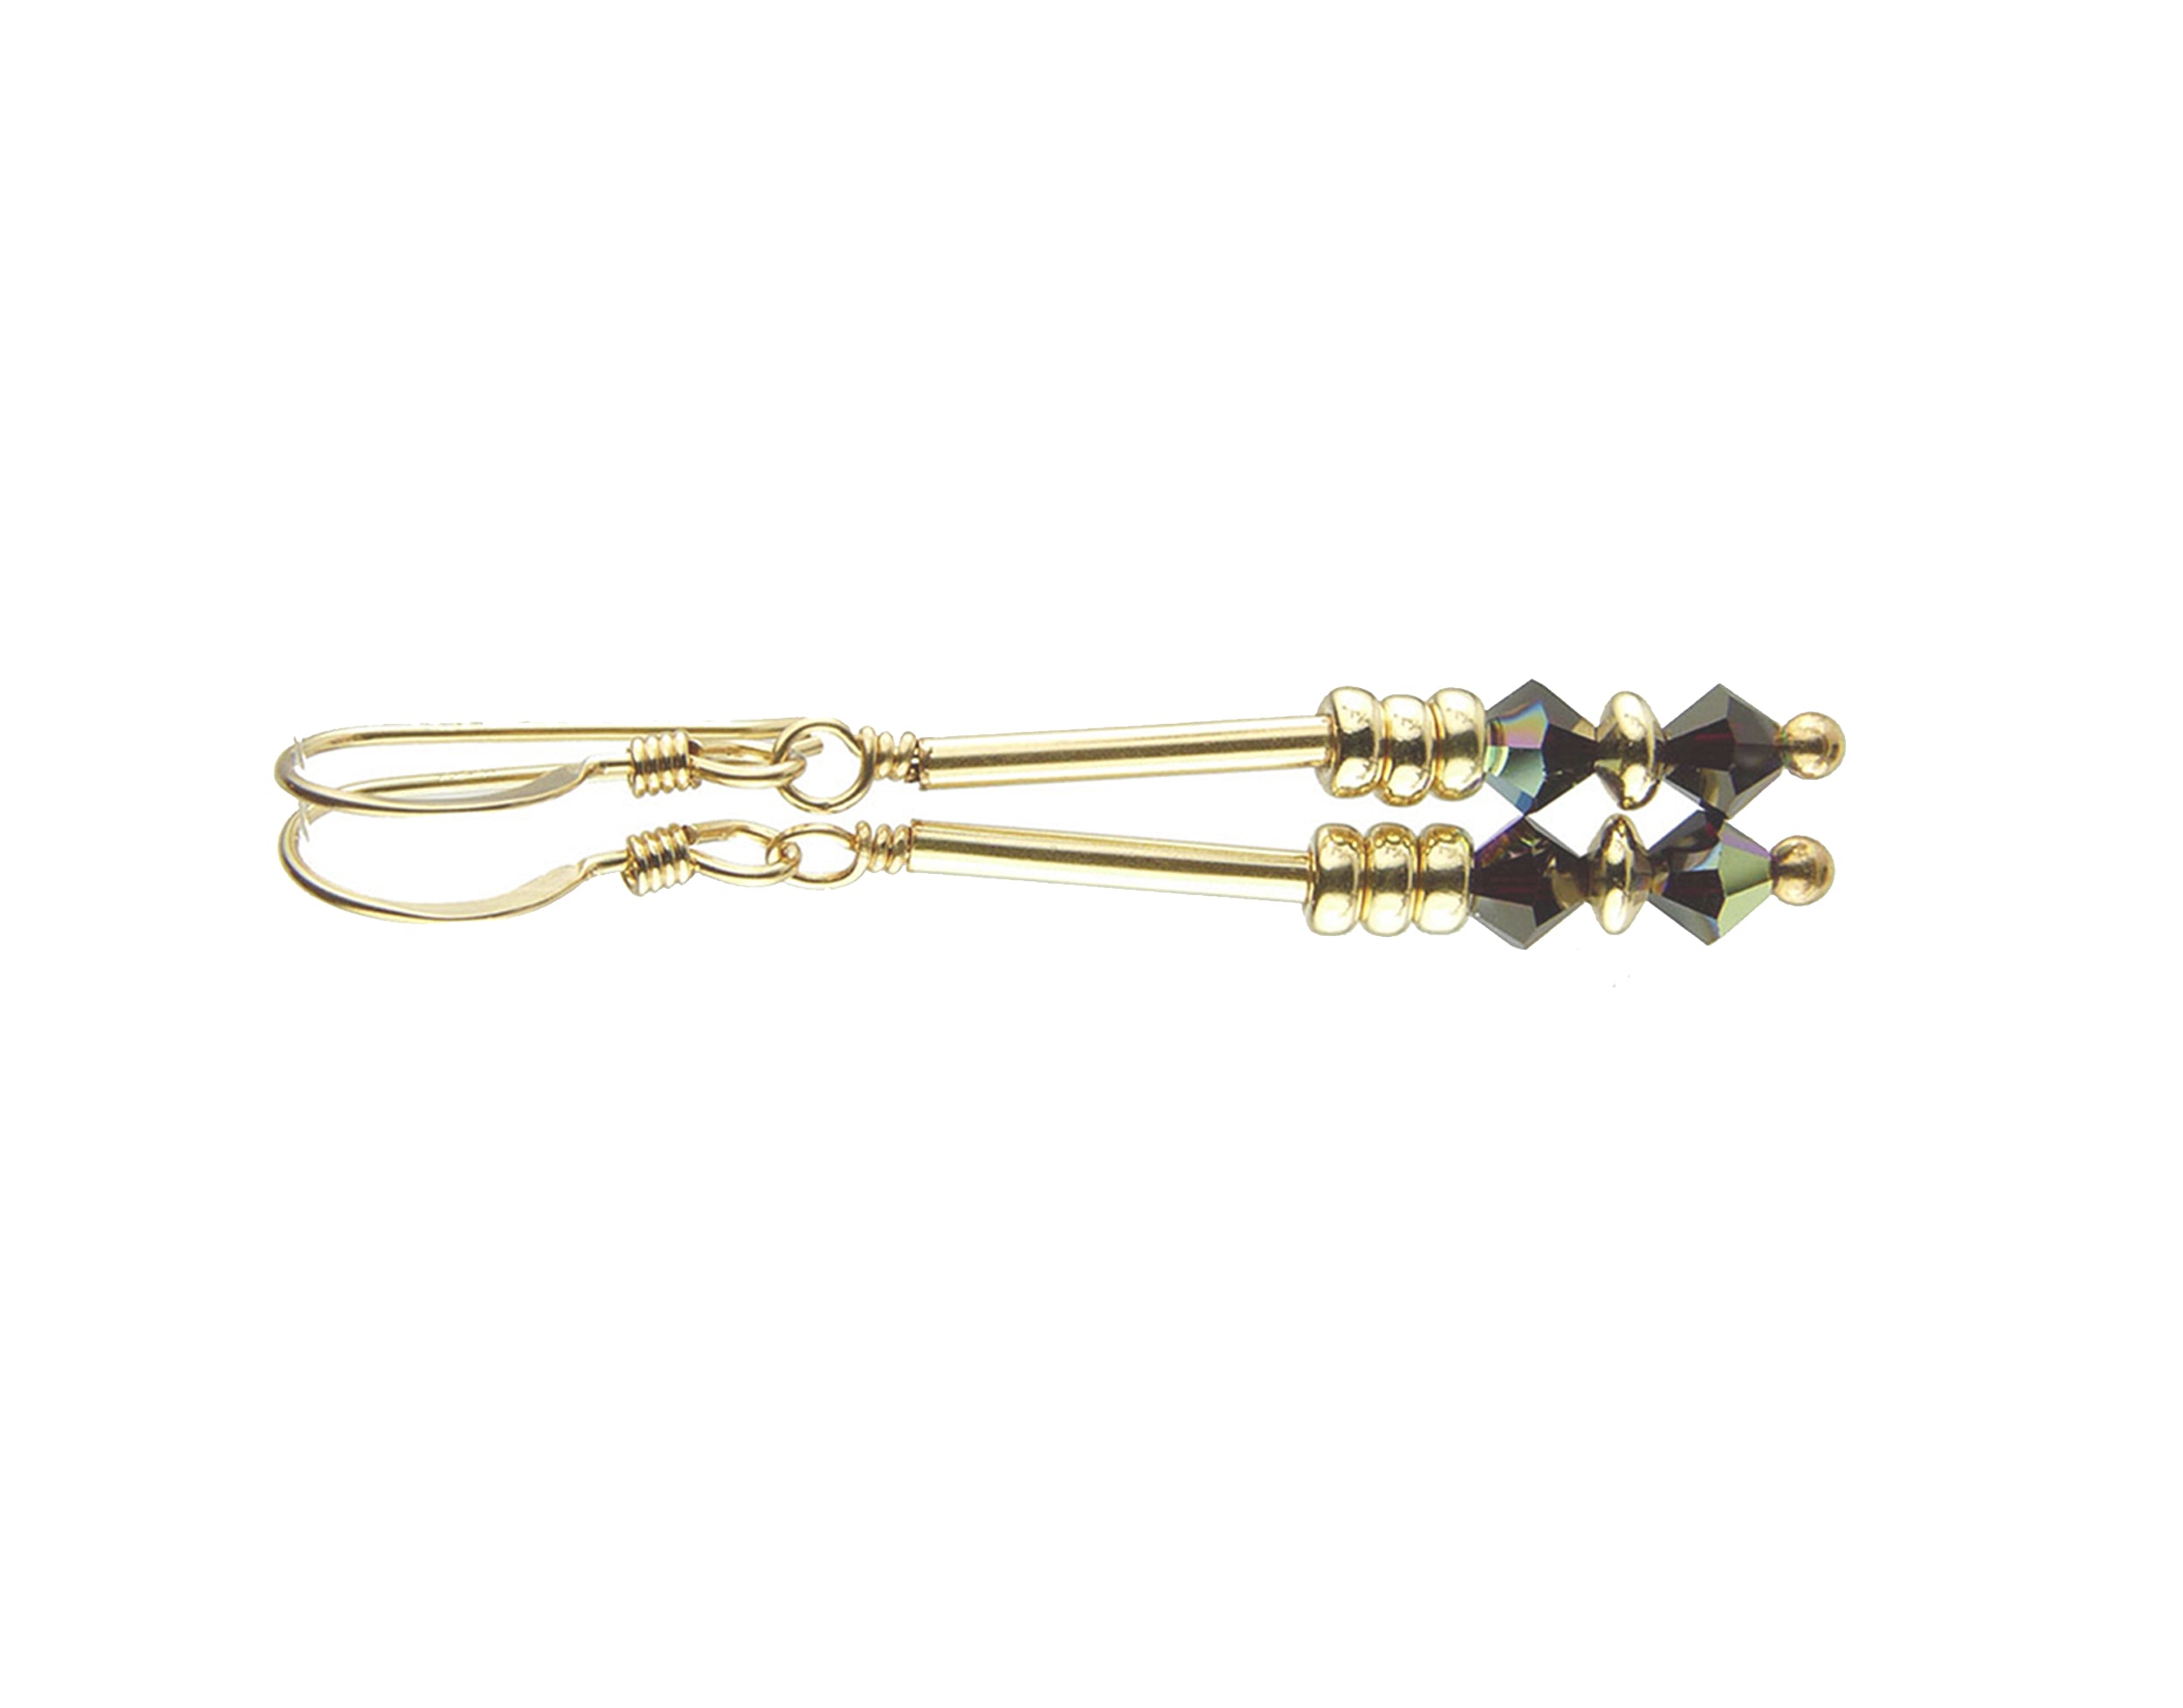 Garnet Earrings, Handmade Dangle Earrings for Women, Red Crystal Drop Earrings, Gold &amp; Silver